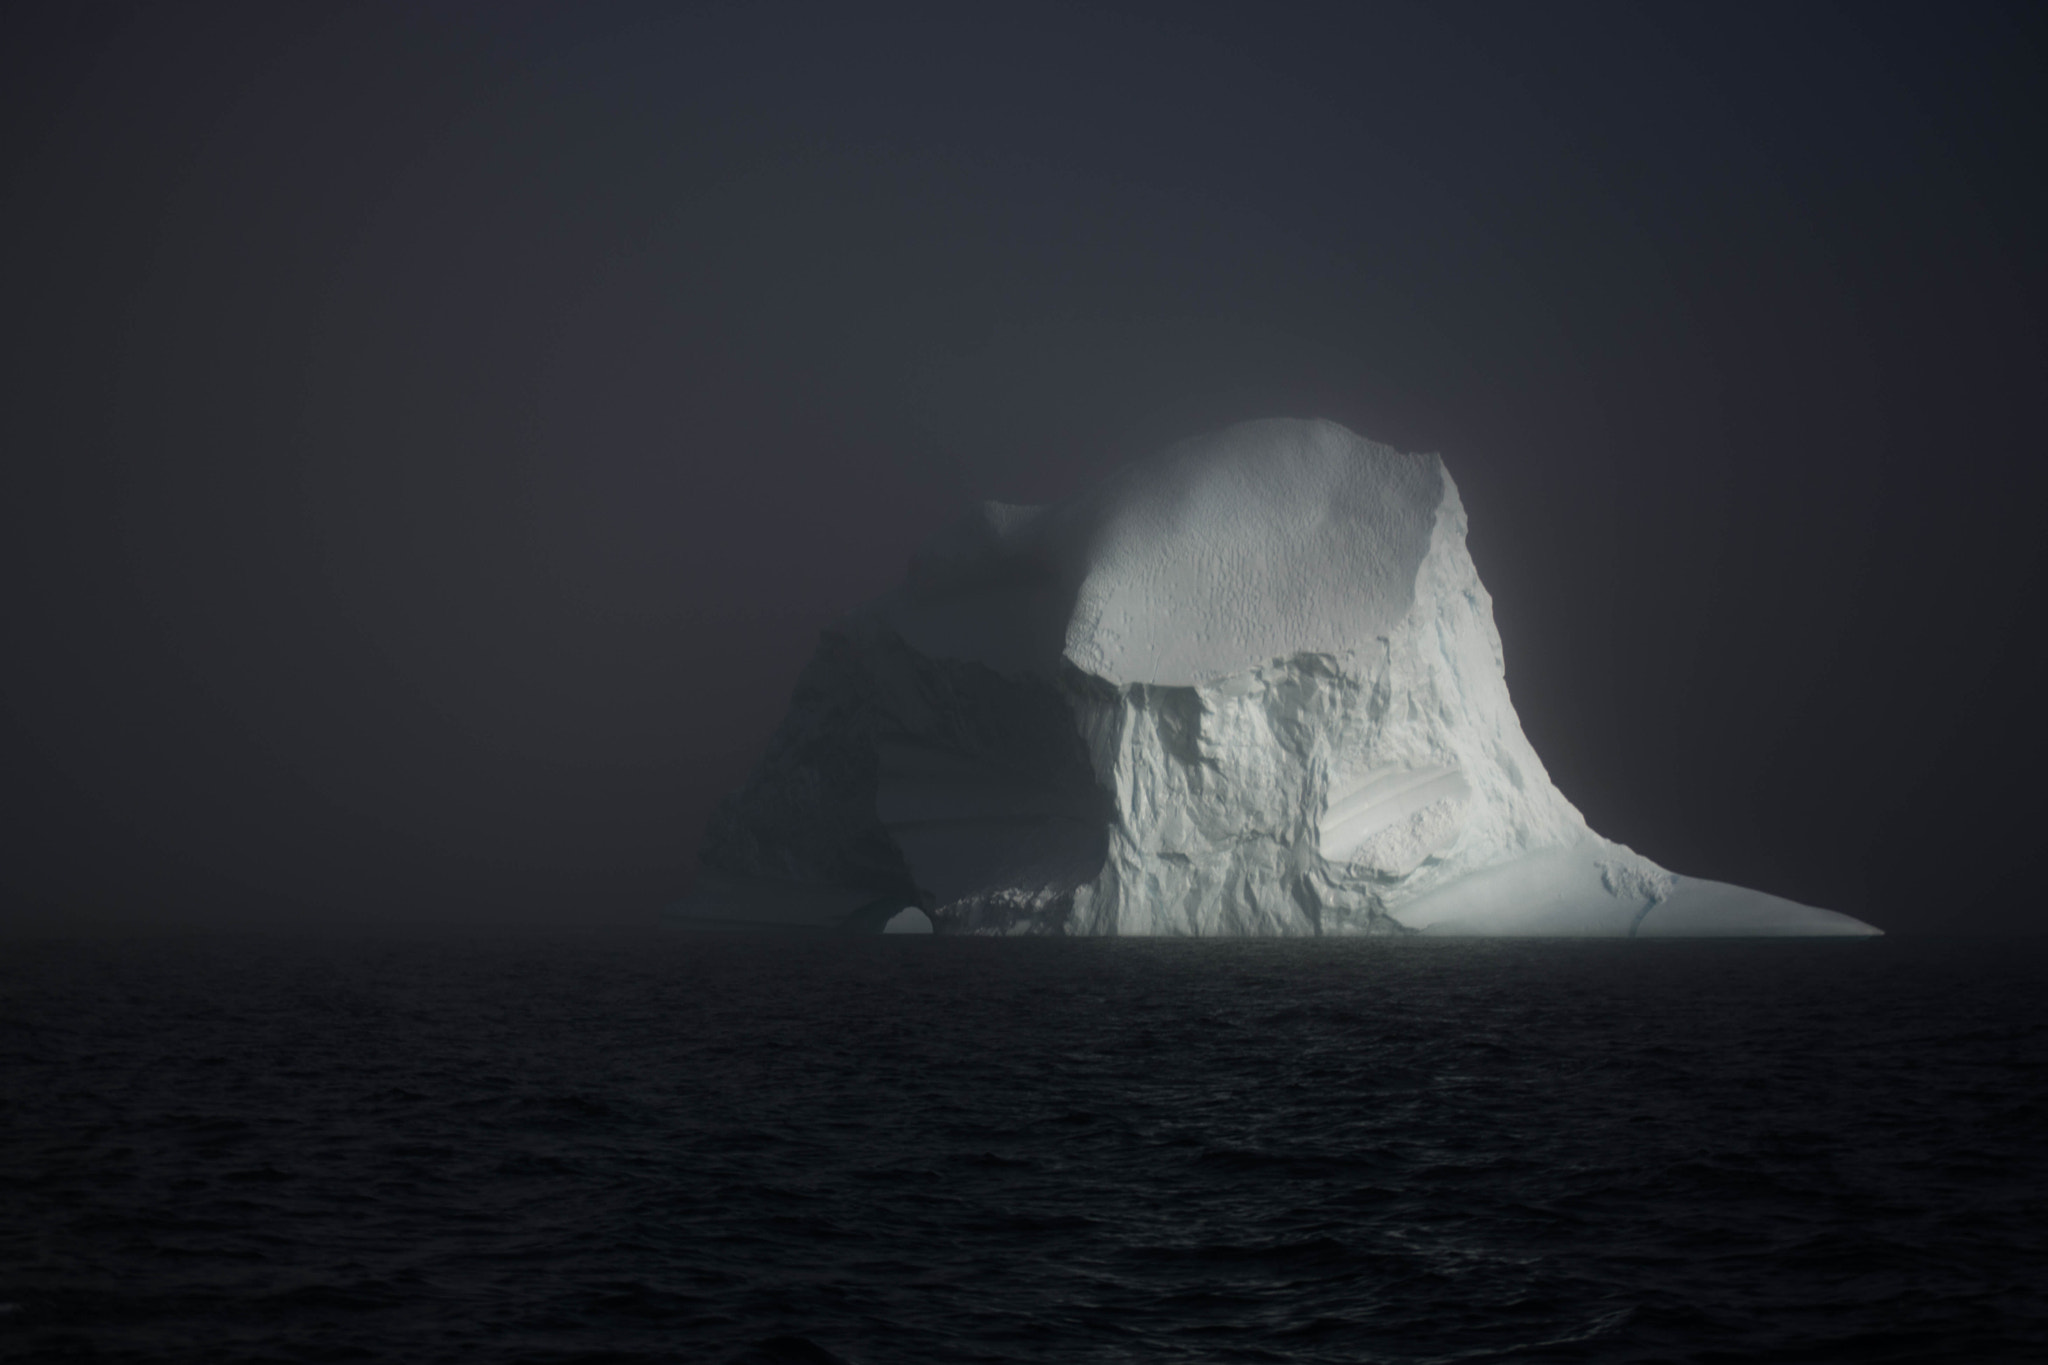 Nikon D7100 + Nikon AF-S DX Nikkor 55-200mm F4-5.6G VR sample photo. Iceberg photography